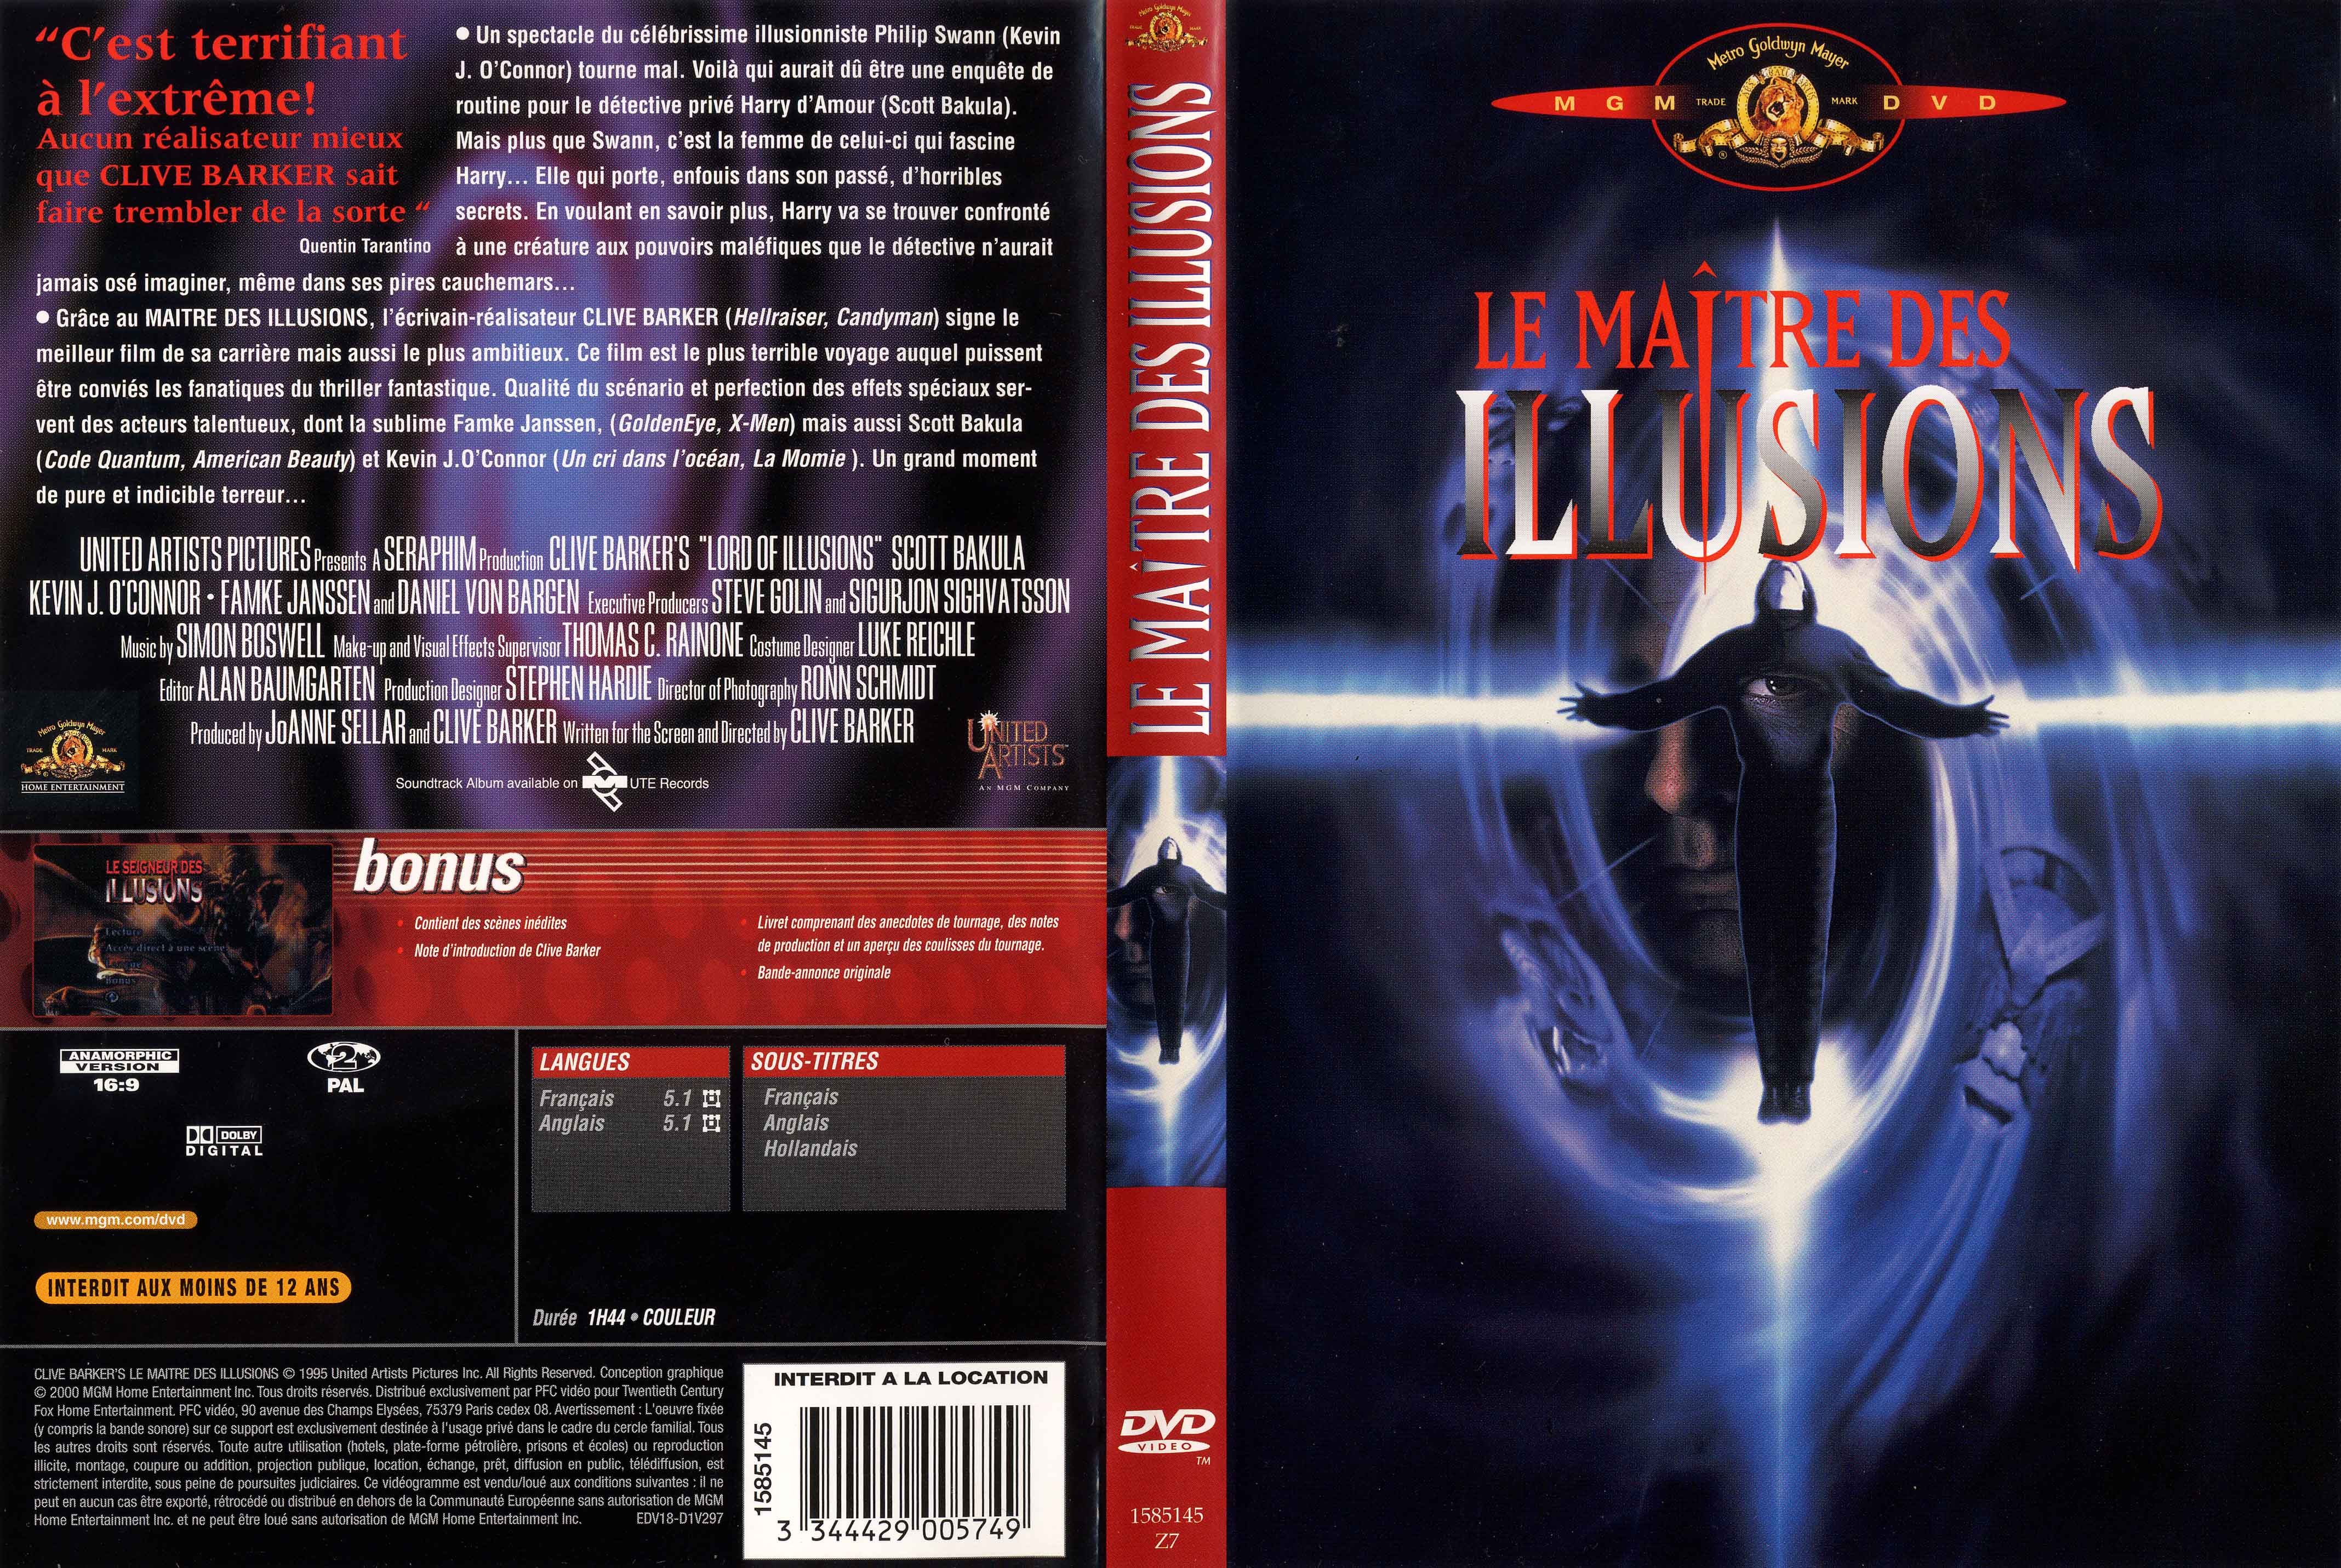 Jaquette DVD de Le maitre des illusions - Cinéma Passion